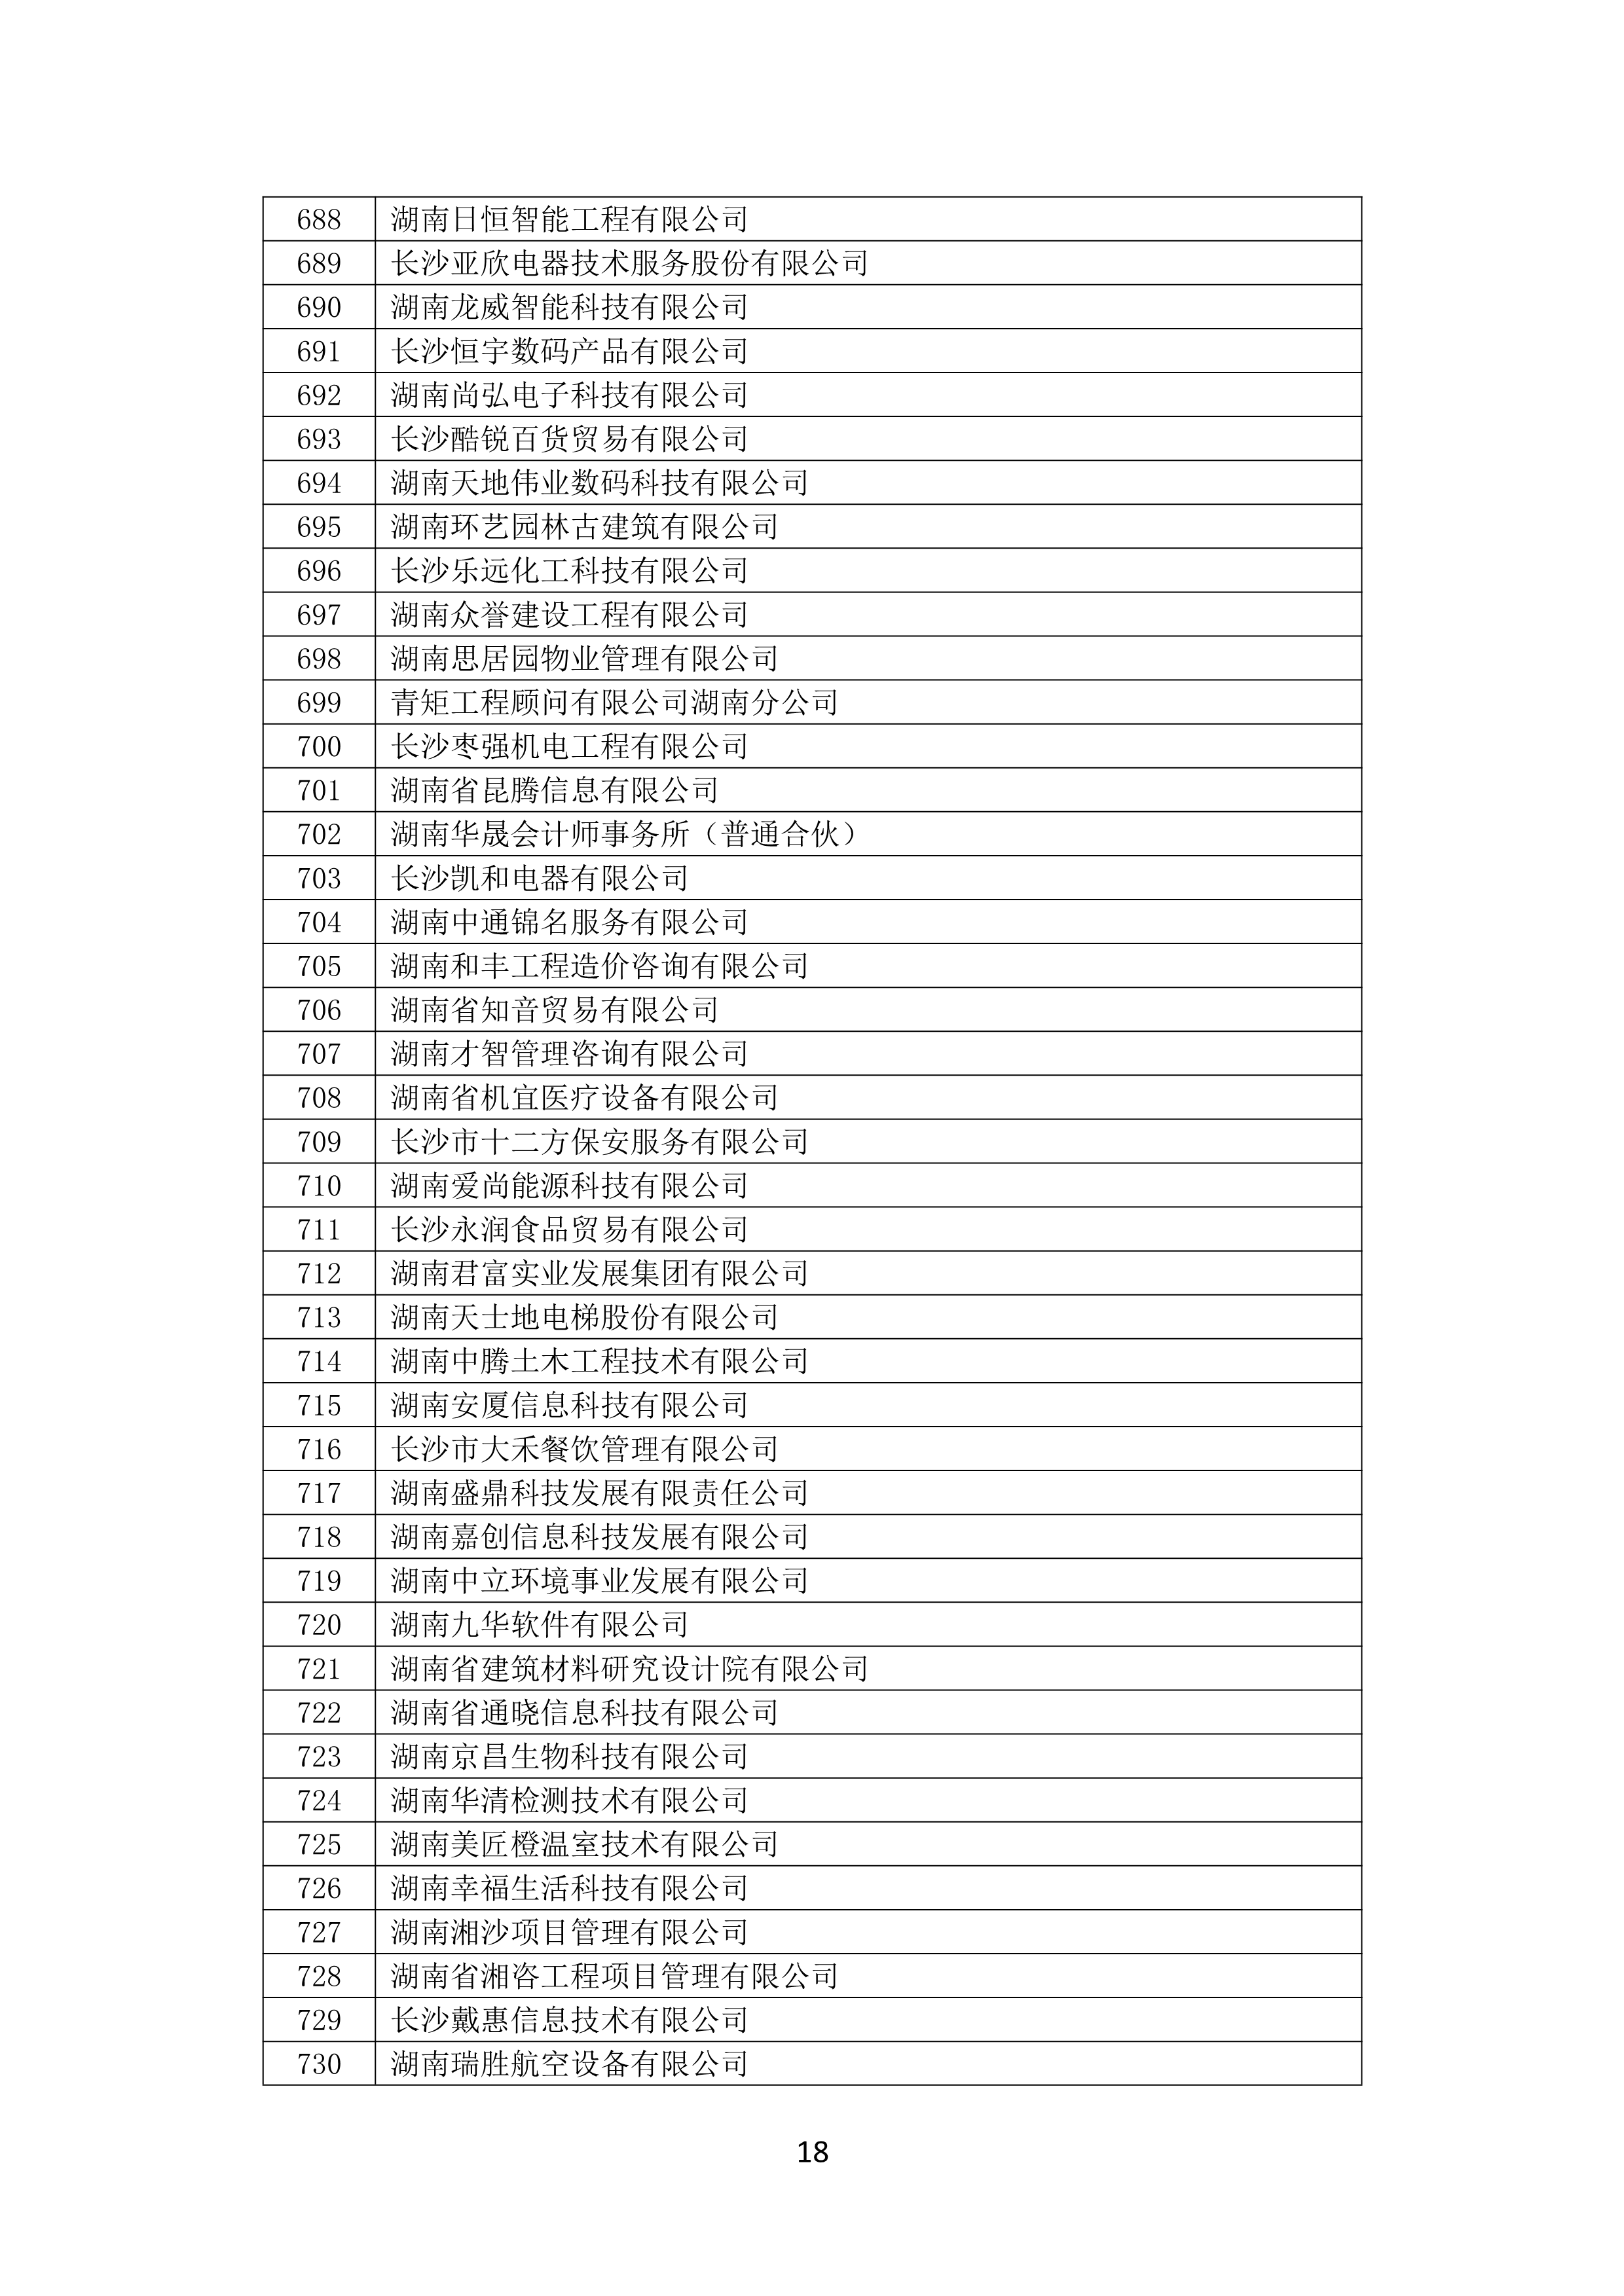 2021 年(nián)度湖南省守合同重信用企業名單_19.png